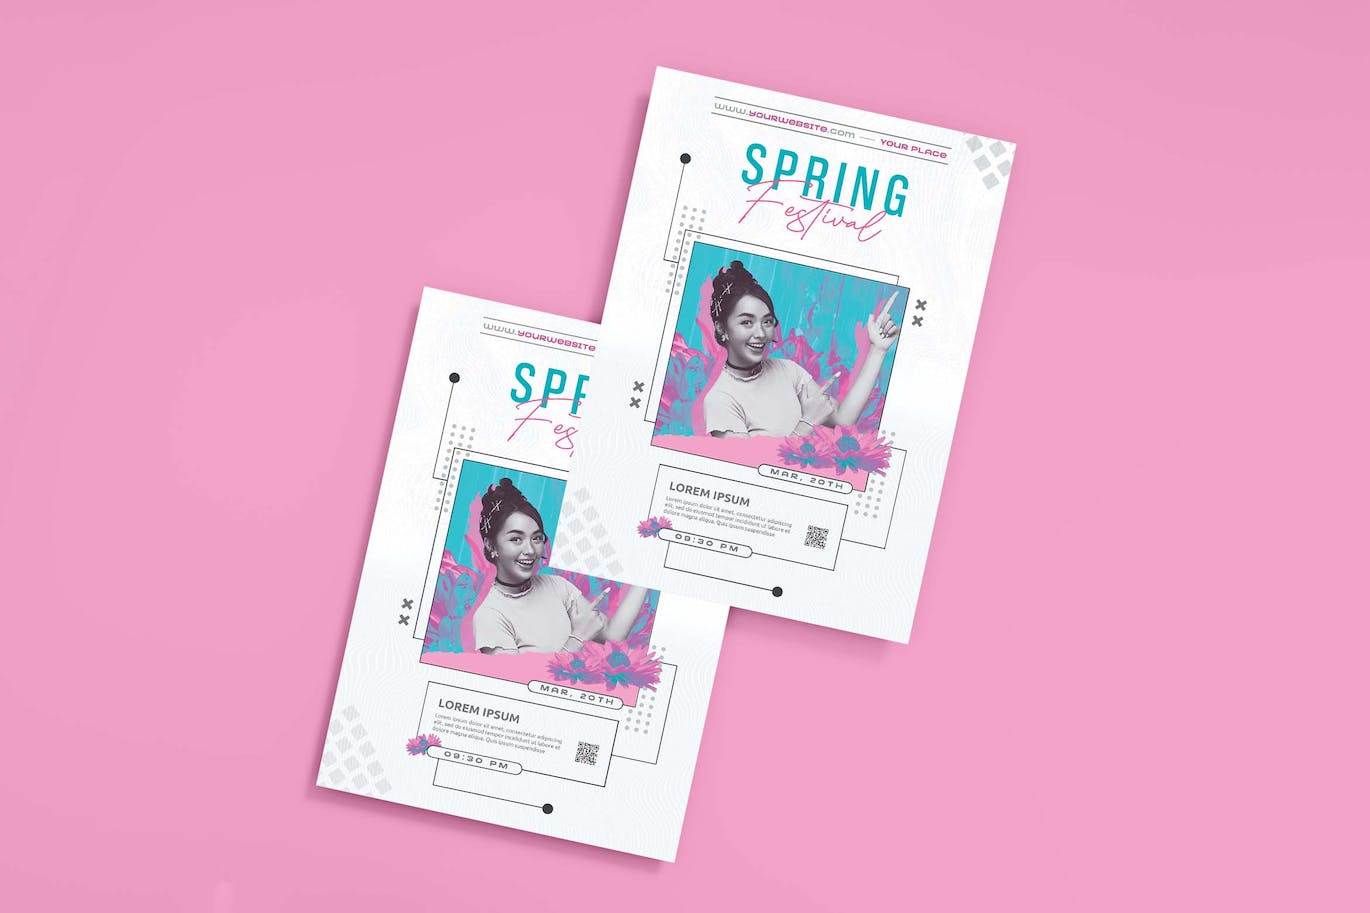 春节活动宣传单模板下载 Spring Festival Flyer 设计素材 第1张